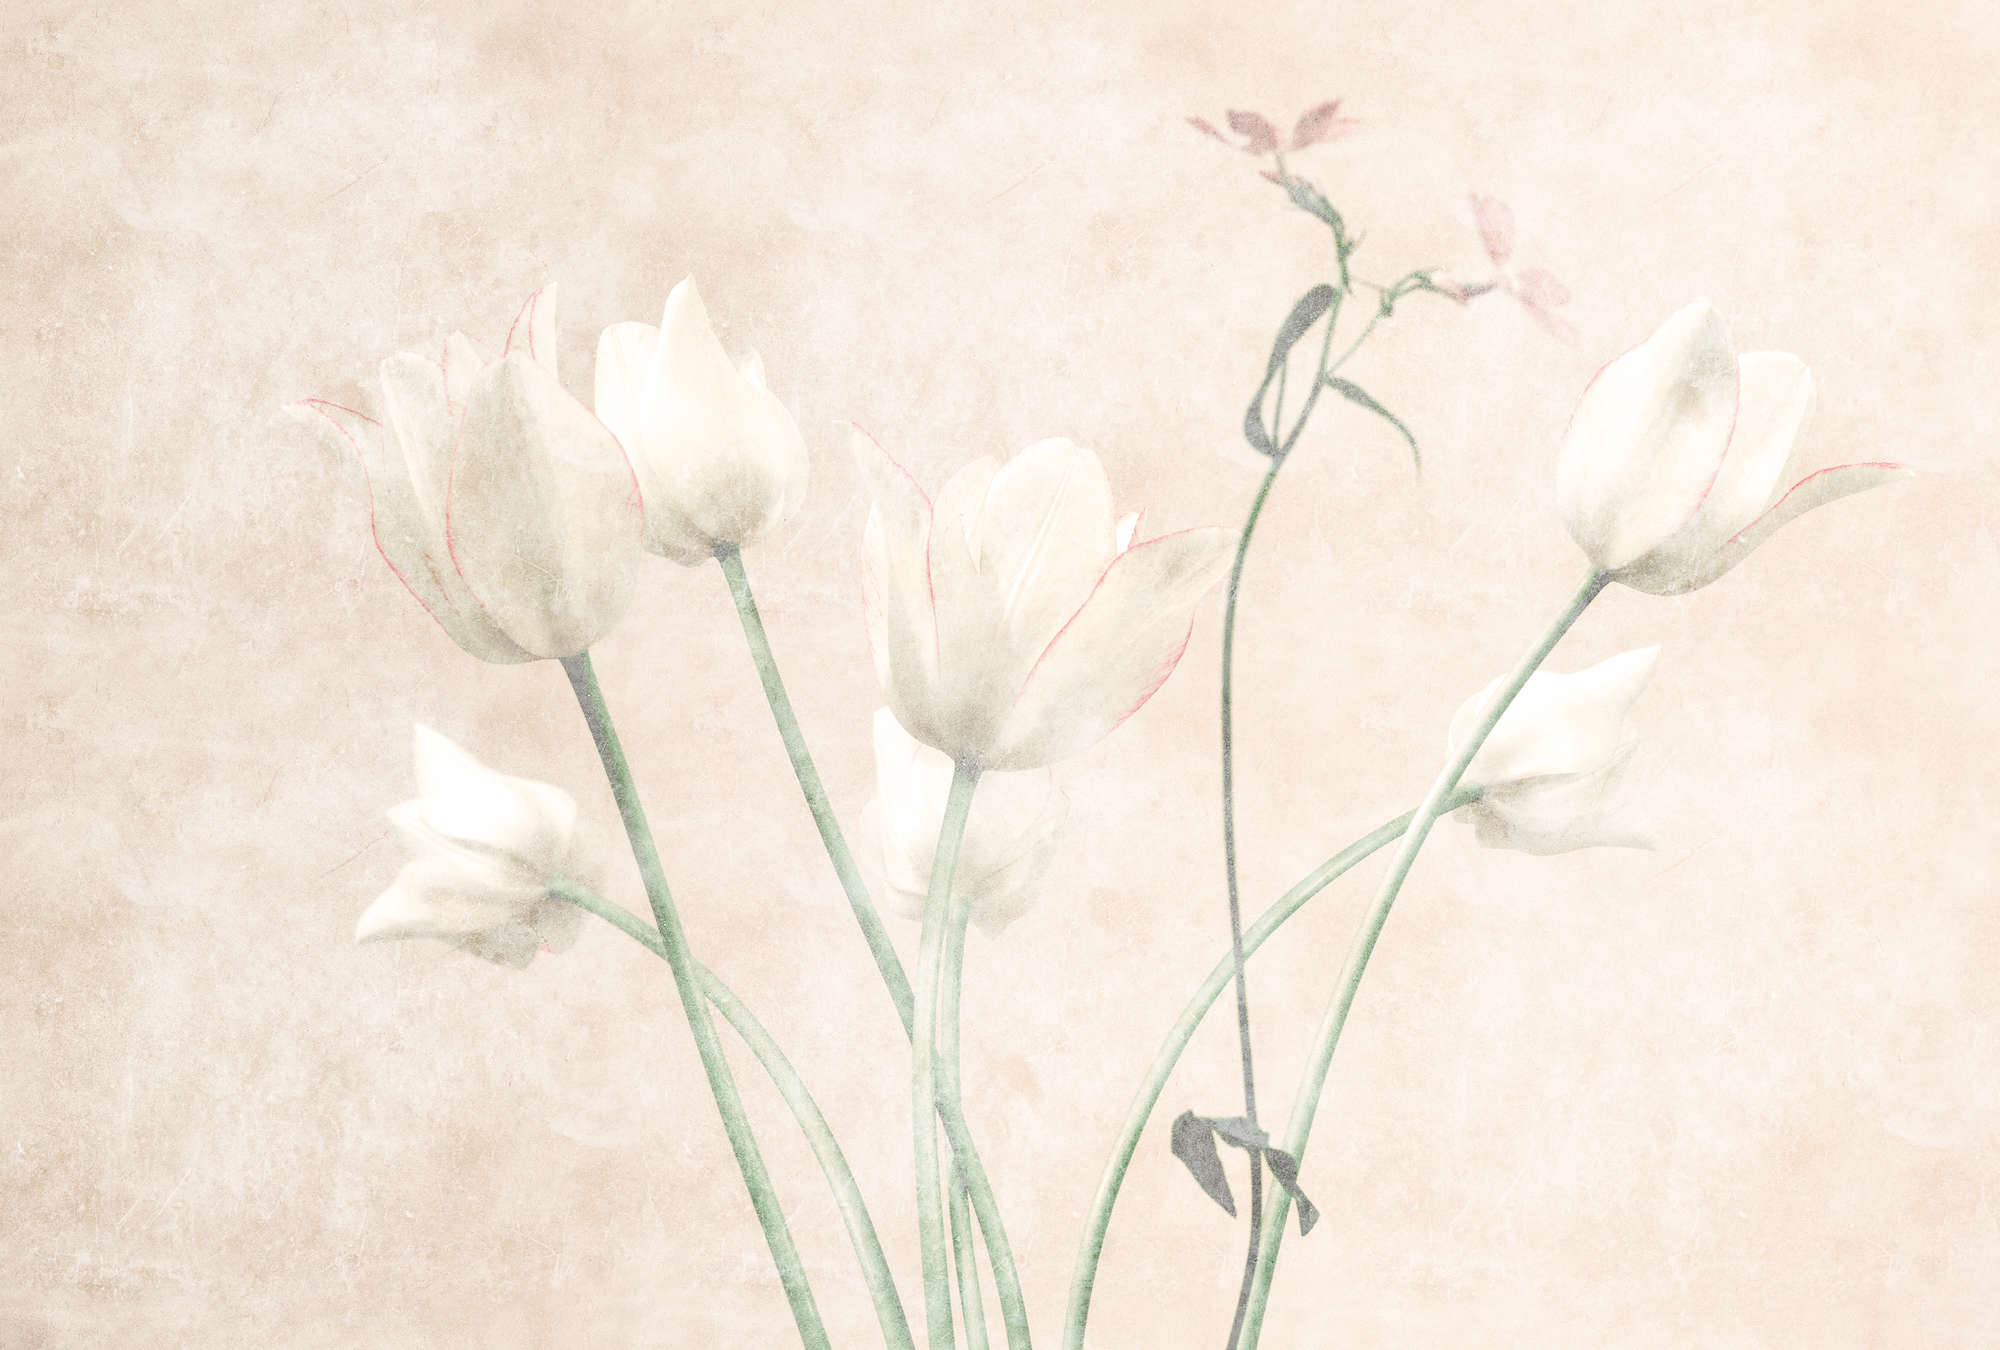             Morning Room 3 – Blumen Fototapete Tulpen im verblassten Stil
        